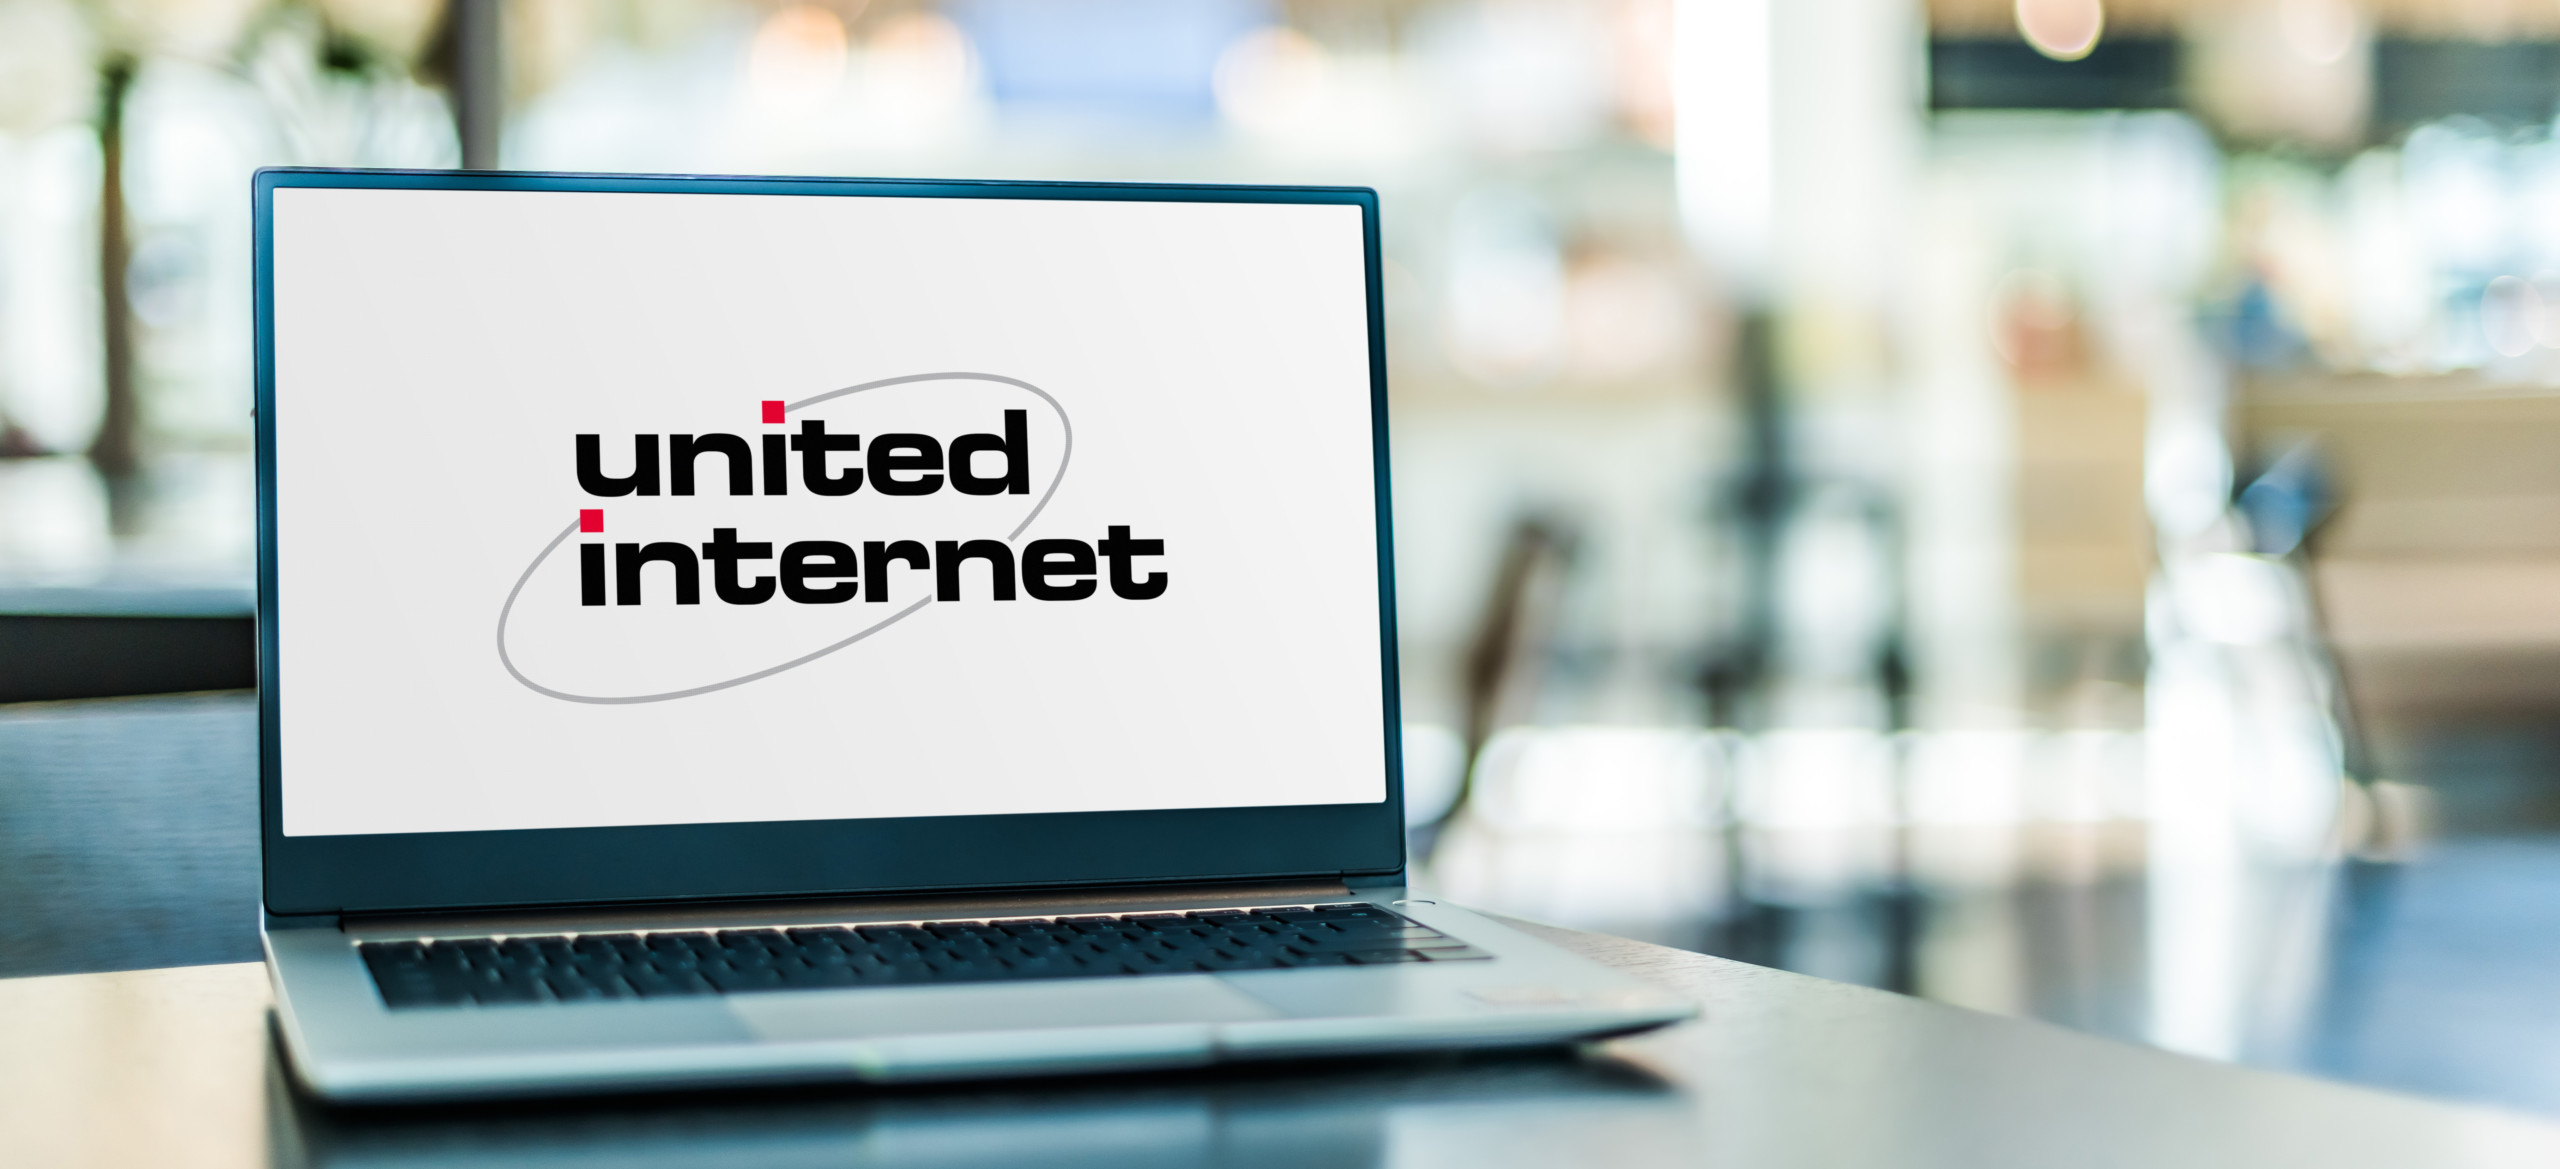 United Internet verkündet National Roaming-Deal mit Vodafone und wird dafür an der Börse gefeiert!